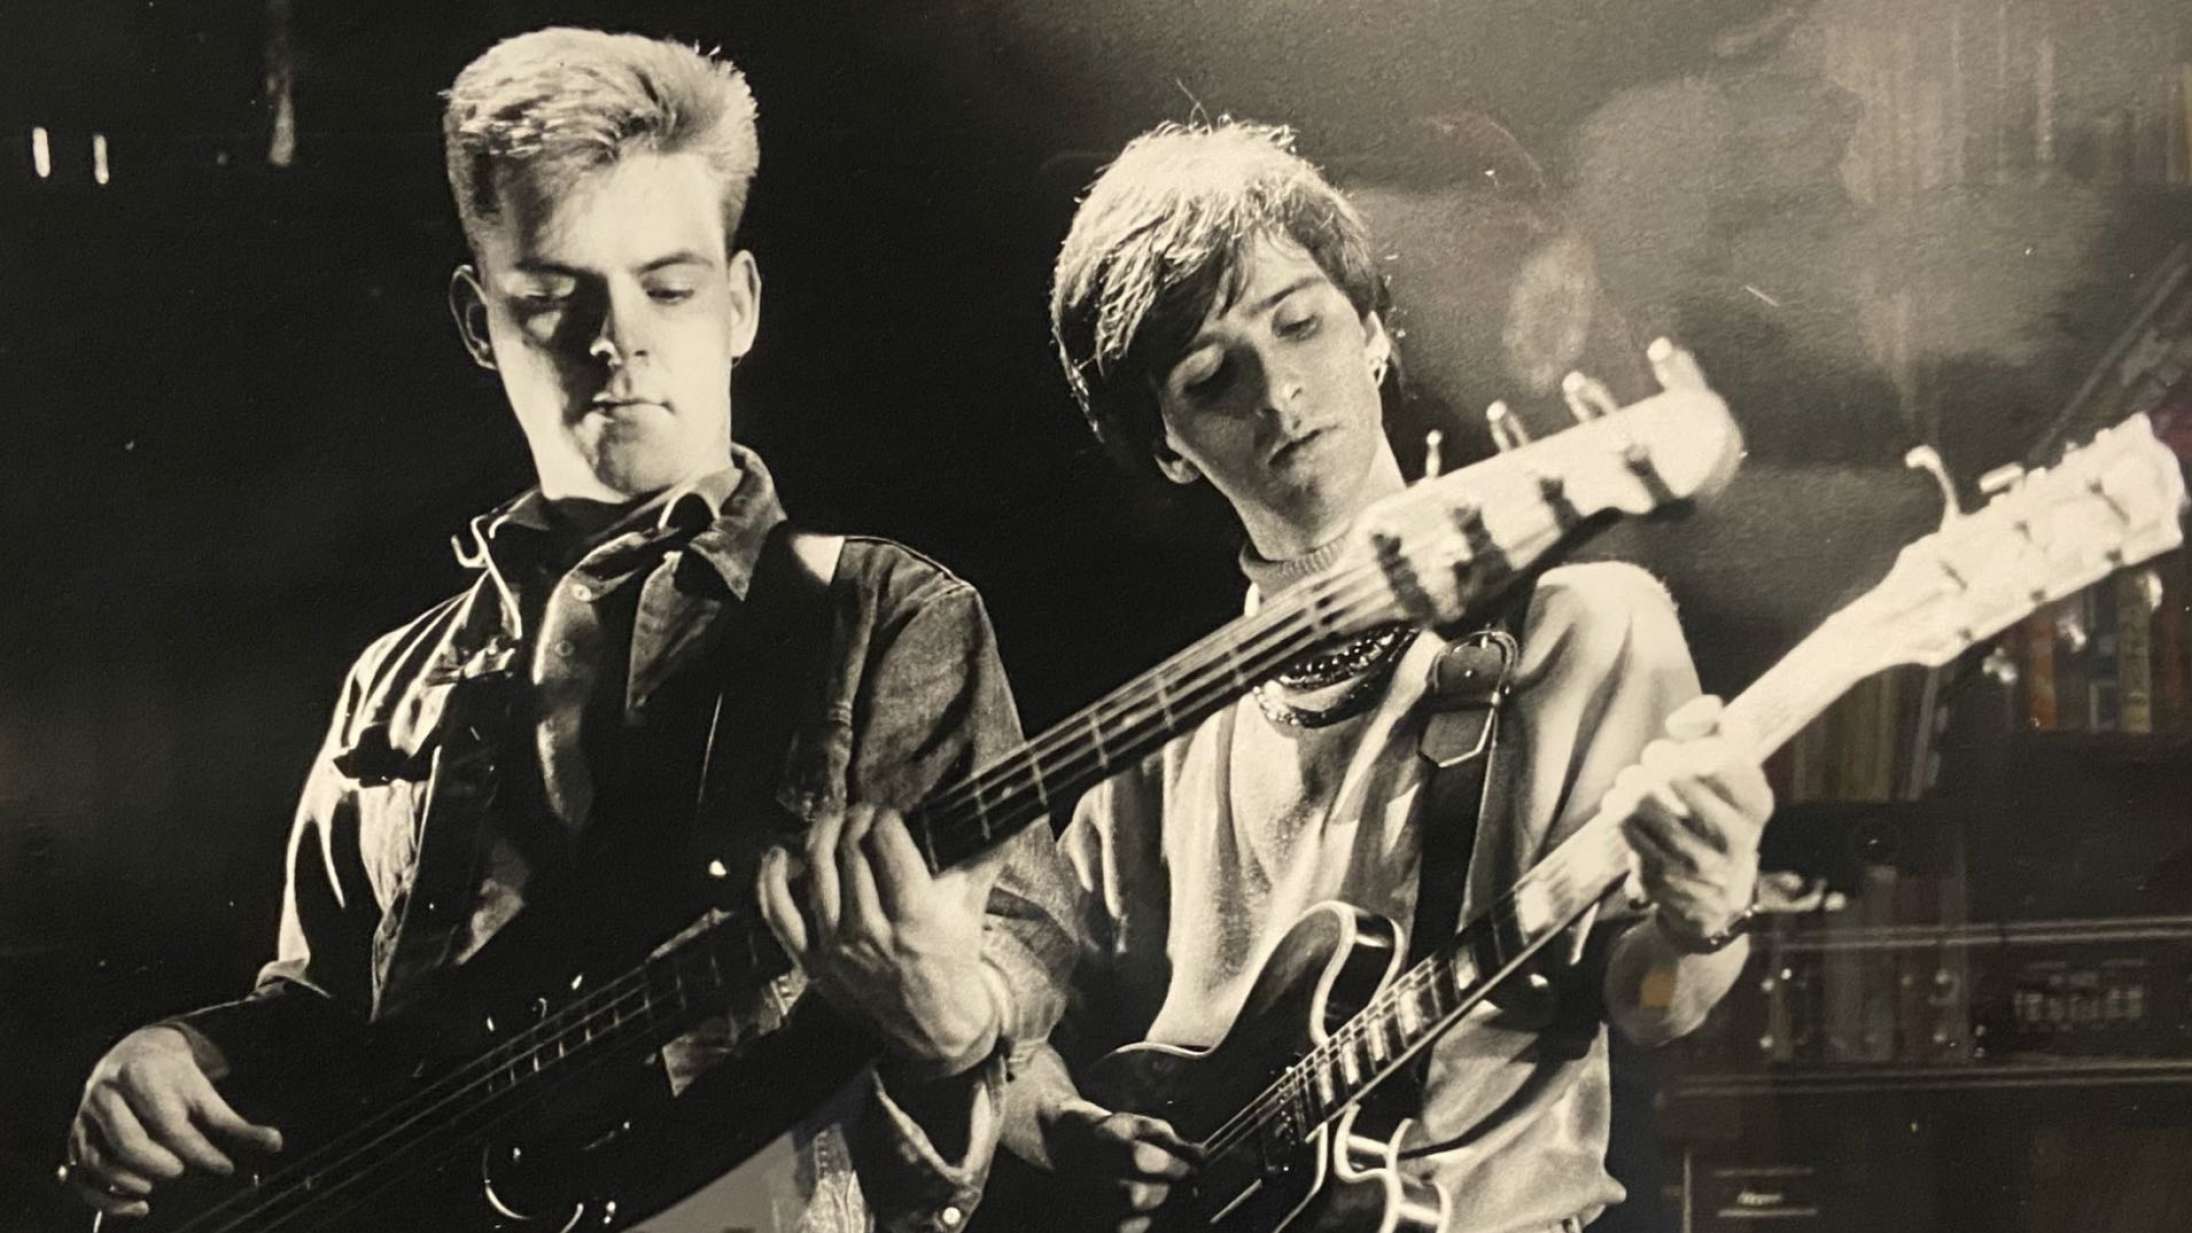 The Smiths’ bassist død i en alder af 59 år